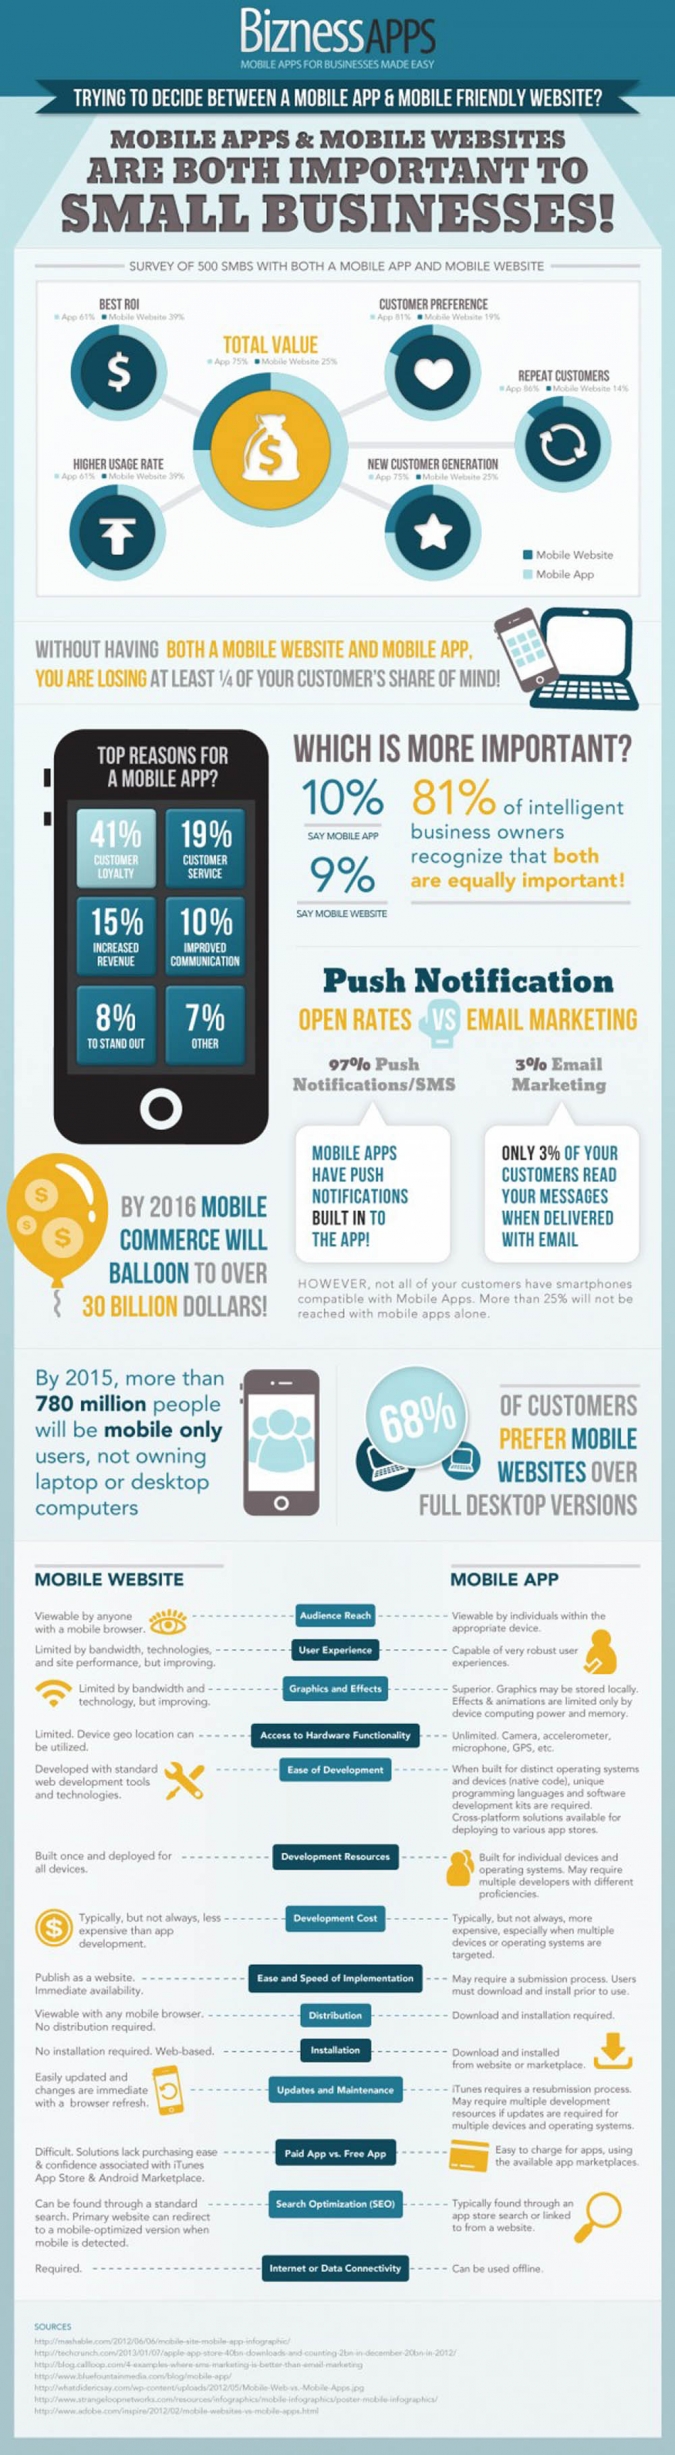 Infografik:Mobile App oder Mobile Website - Was ist für Unternehmen wichtiger?